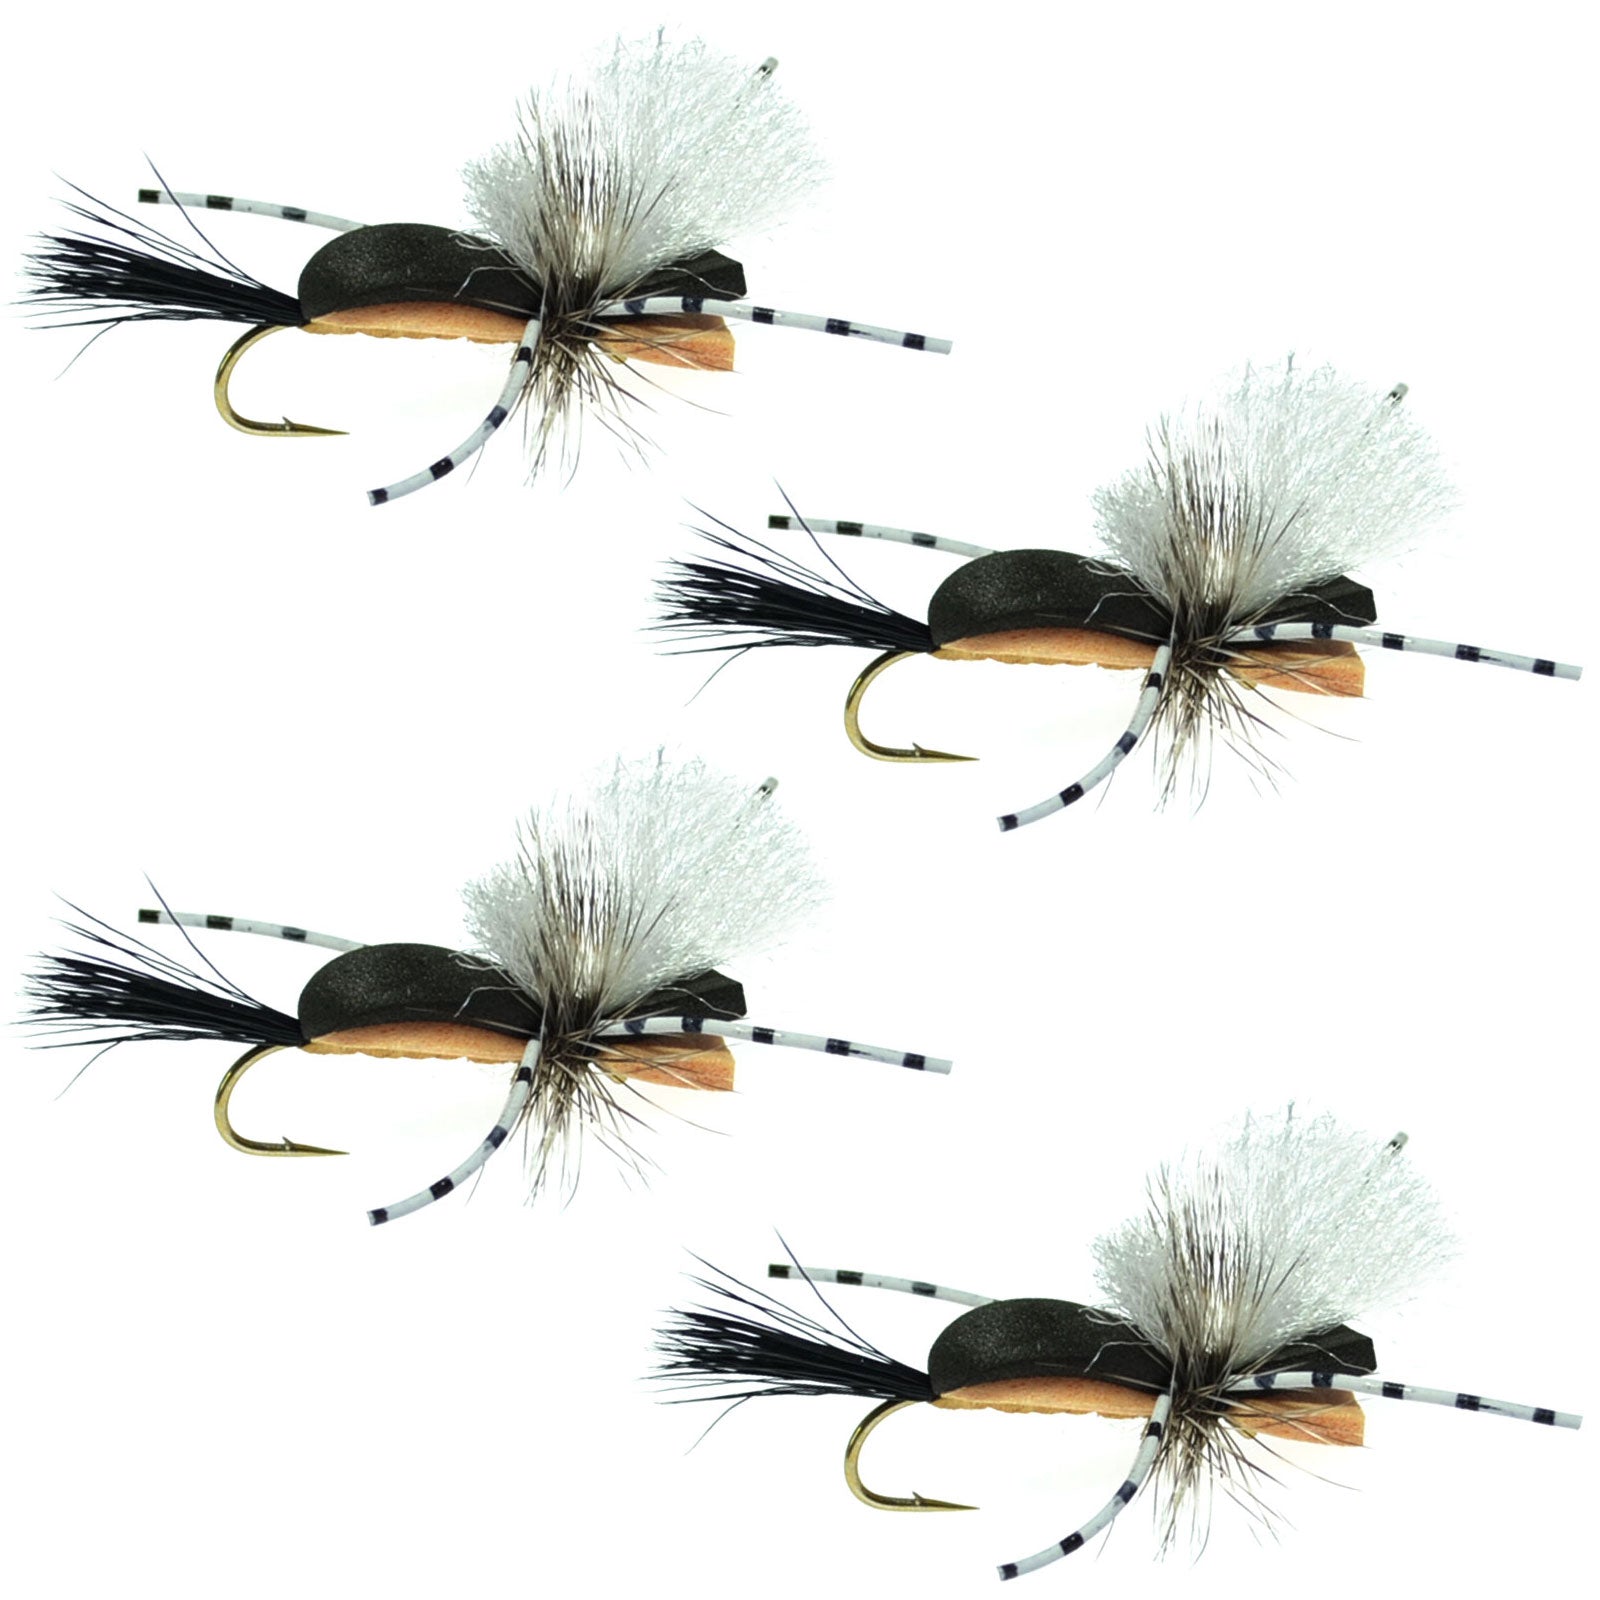 Hippie Stomper Black Tan Foam Body Grasshopper Dry Fly - 4 Flies Size 14